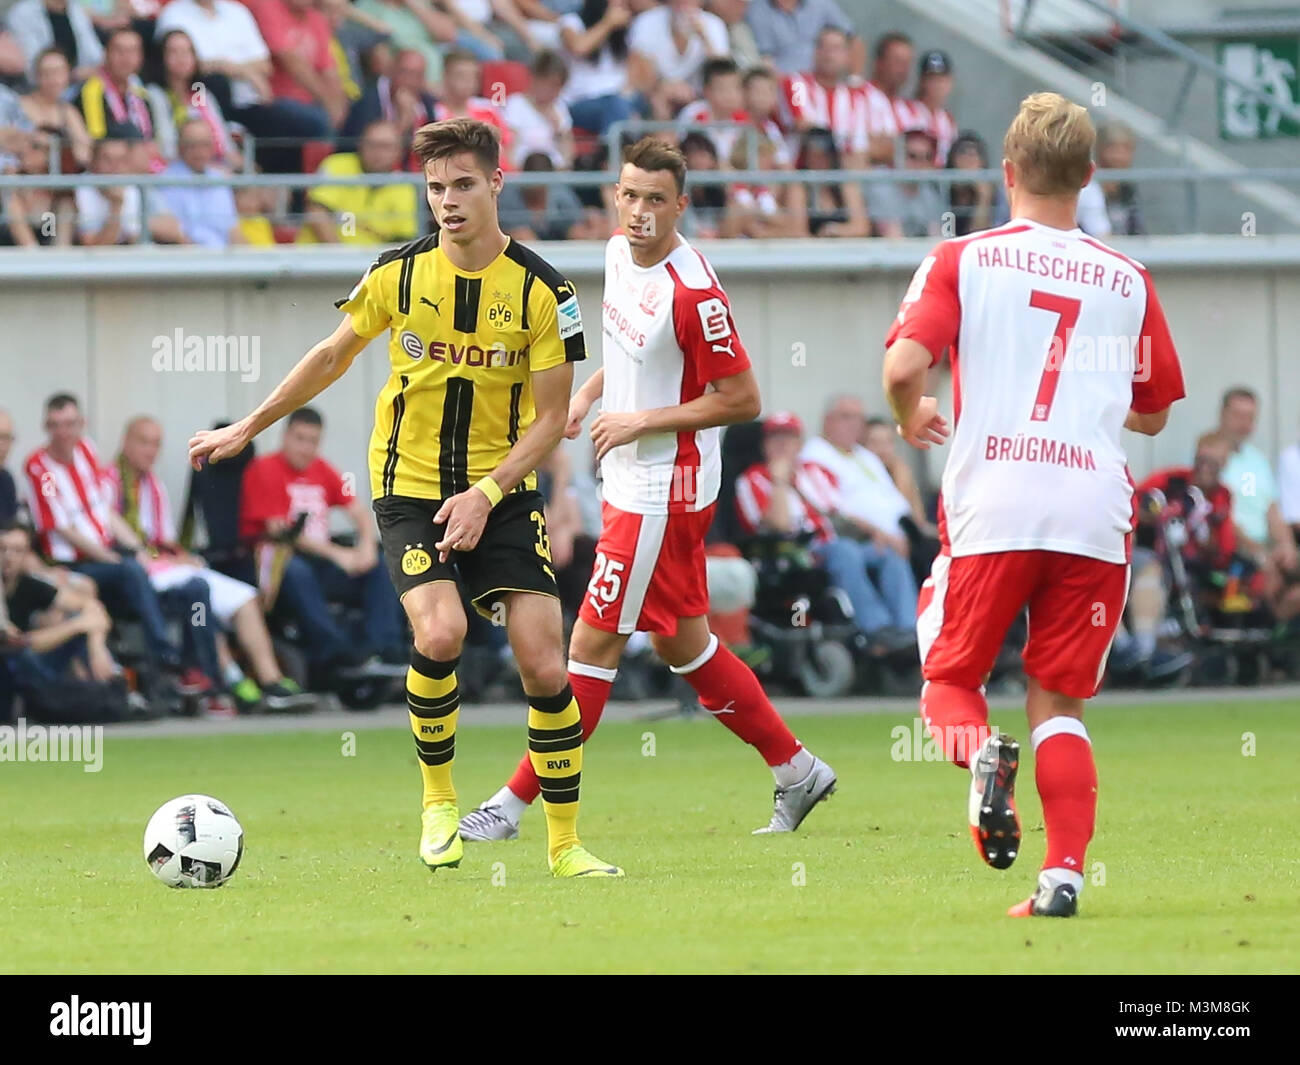 Testspiel Hallescher FC gegen Borussia Dortmund am 23.08.2016 im Erdgas Sportpark Halle/Saale Stock Photo